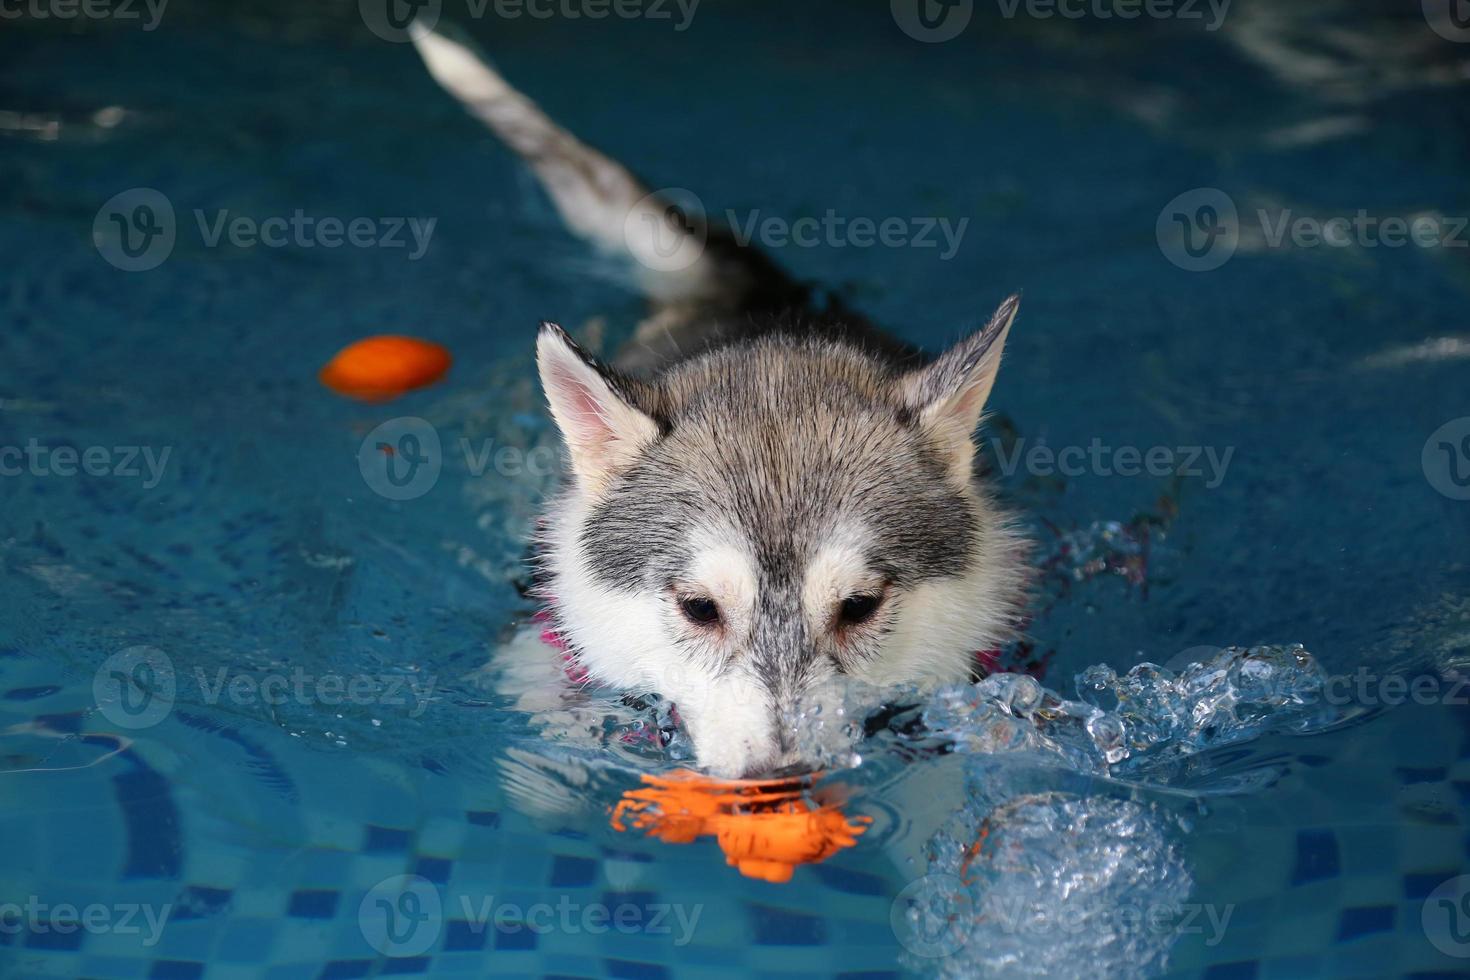 husky siberiano persiguiendo juguetes y haciendo salpicaduras de agua en la piscina. perro nadando perro jugando con juguete. foto